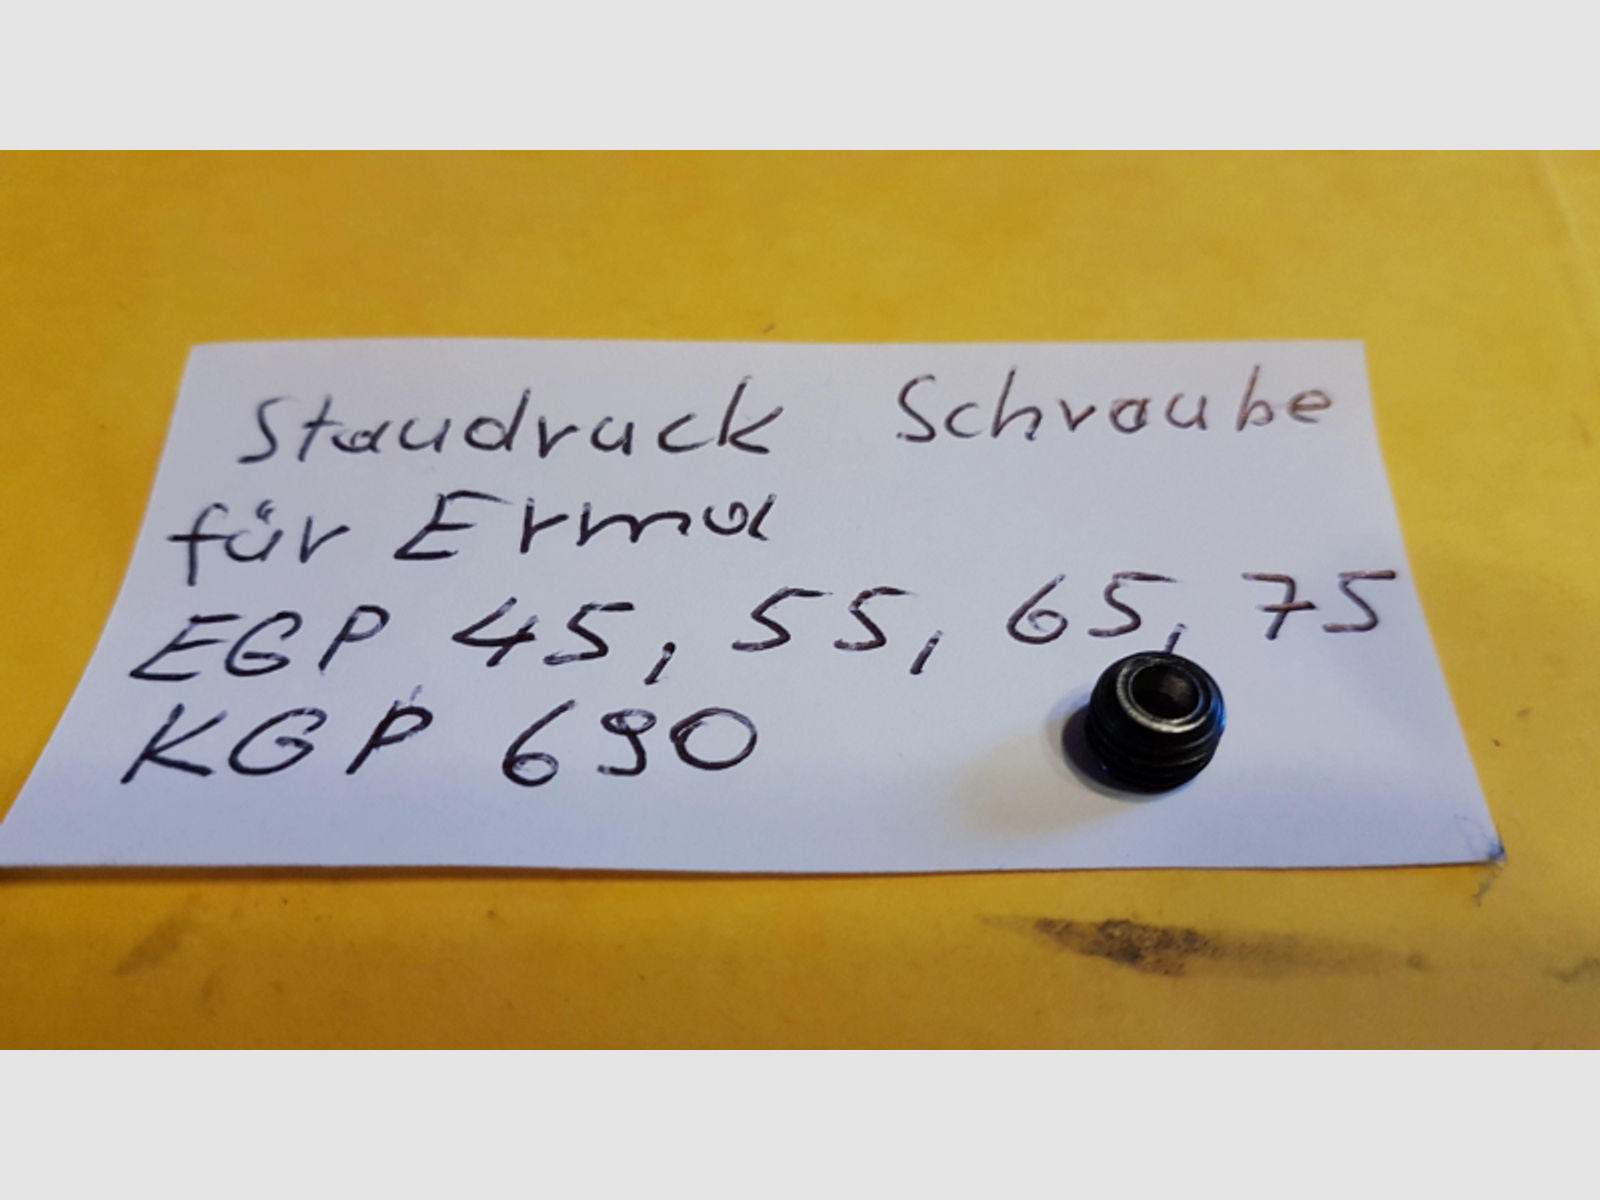 Staudruck Schraube _für ERMA EGP 45 ,55 ,65, 75,88, ;KGP 690 ,____ Druckstau-Schraube ________ >>>>>